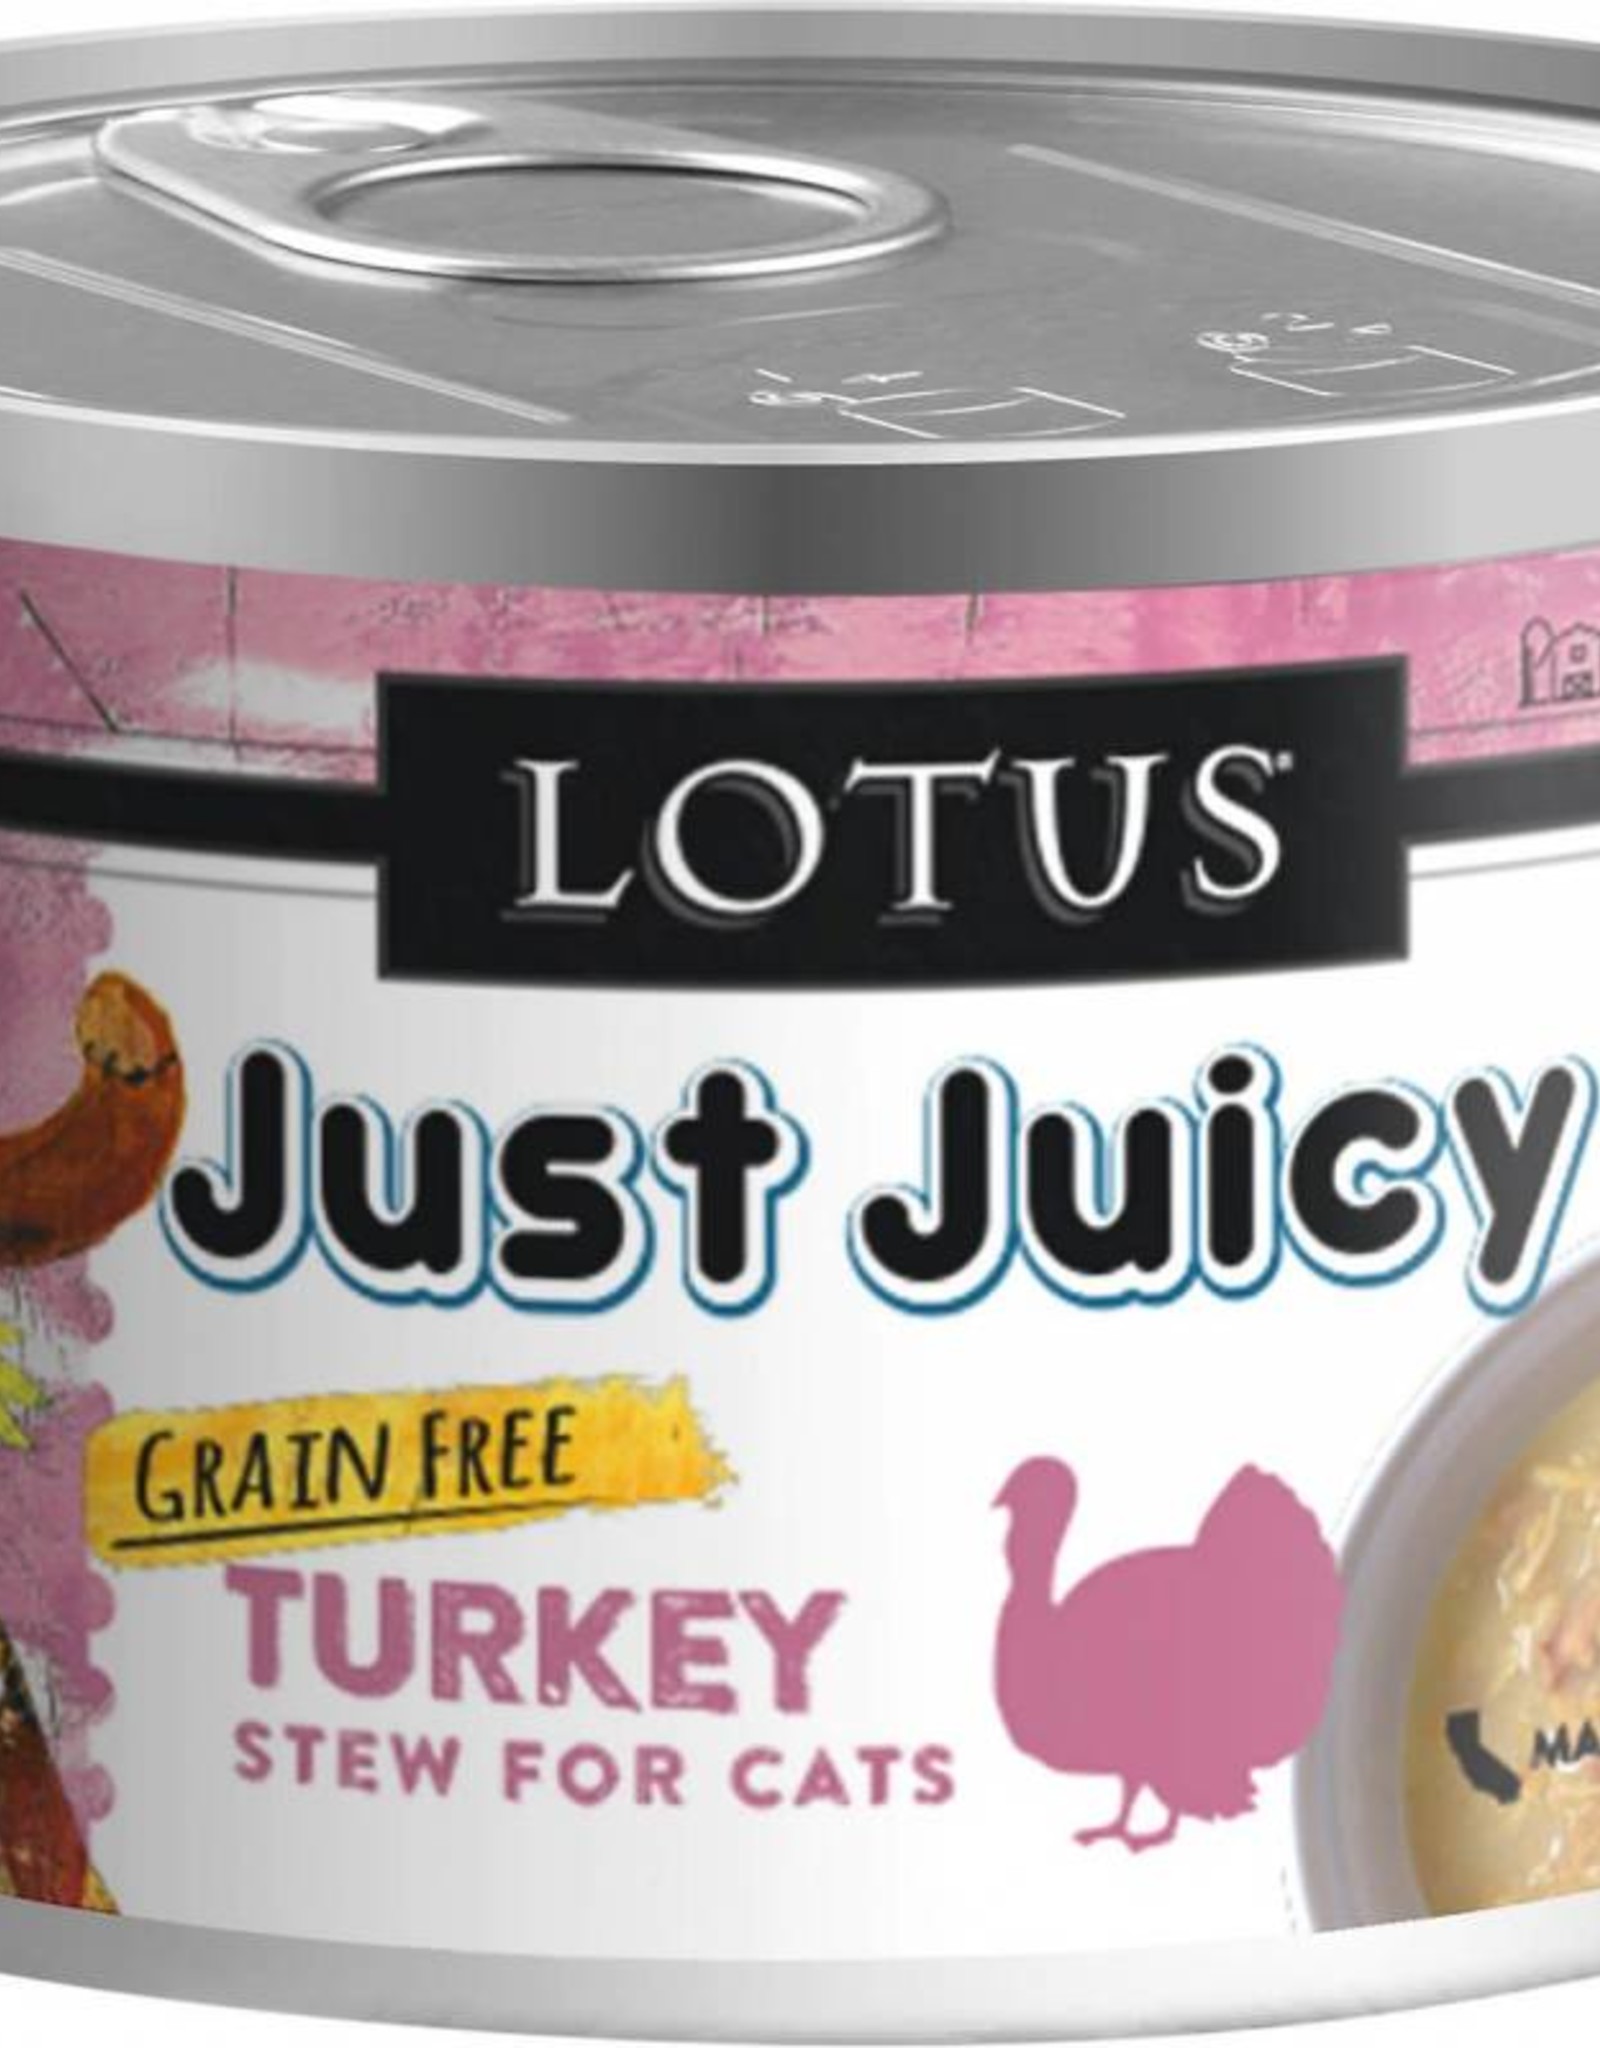 Lotus Lotus Just Juicy Turkey Stew